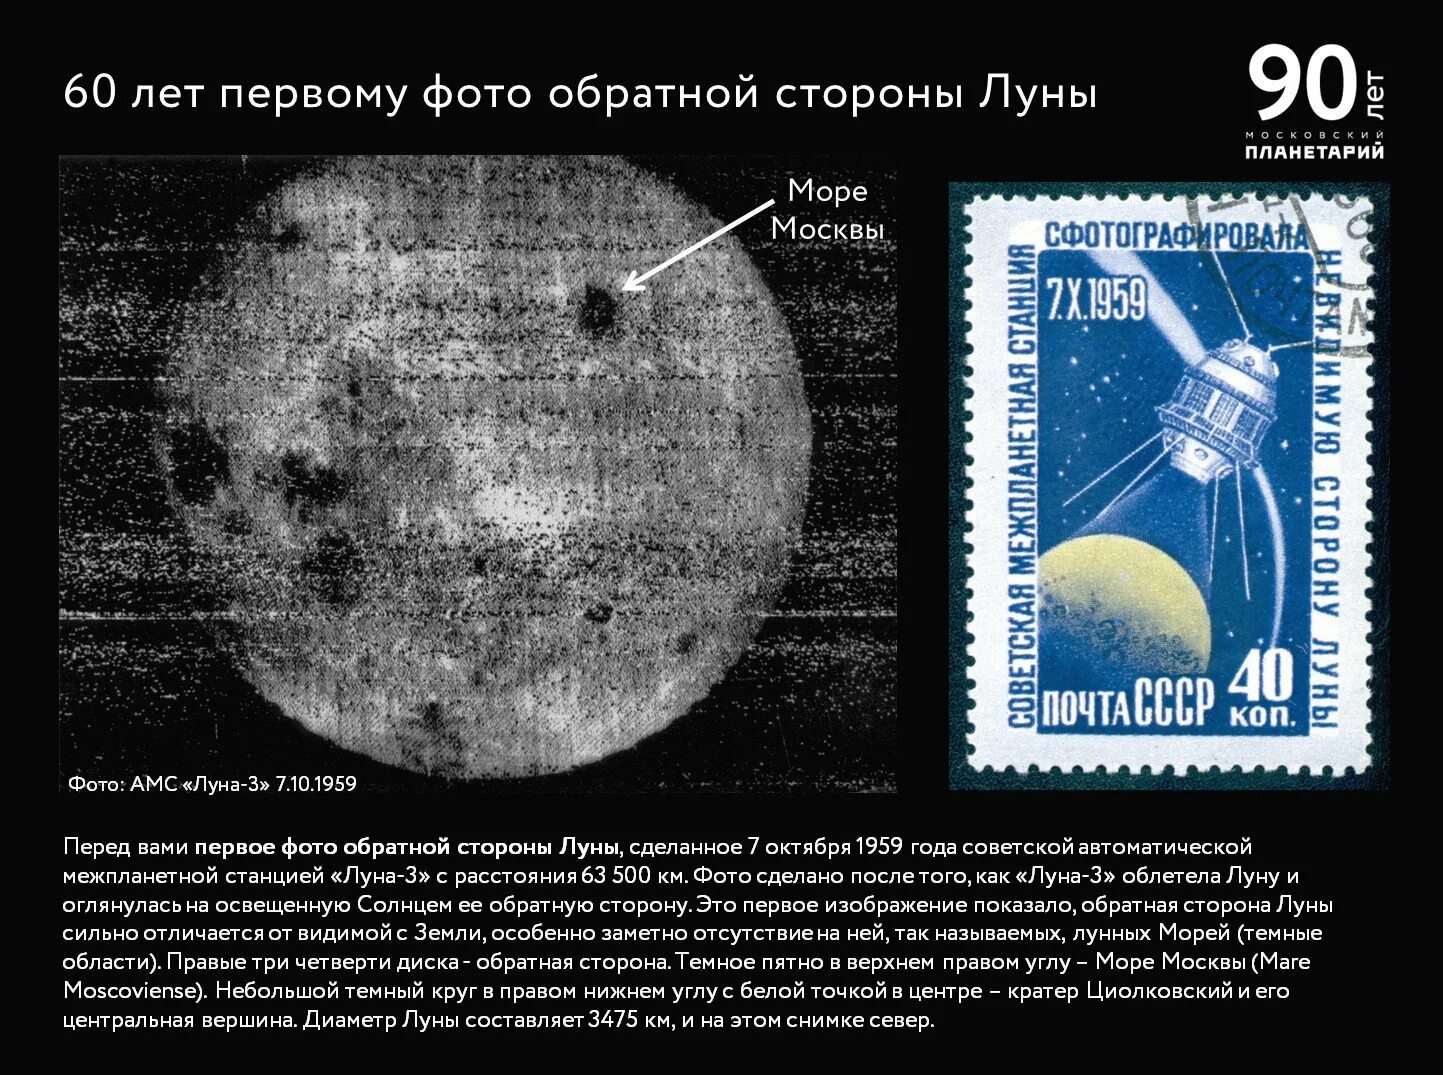 Первые снимки обратной стороны луны. Снимок обратной стороны Луны 1959. Снимок обратной стороны Луны 7 октября 1959 года. Луна 3 снимки обратной стороны Луны. Луна-3 автоматическая межпланетная станция.